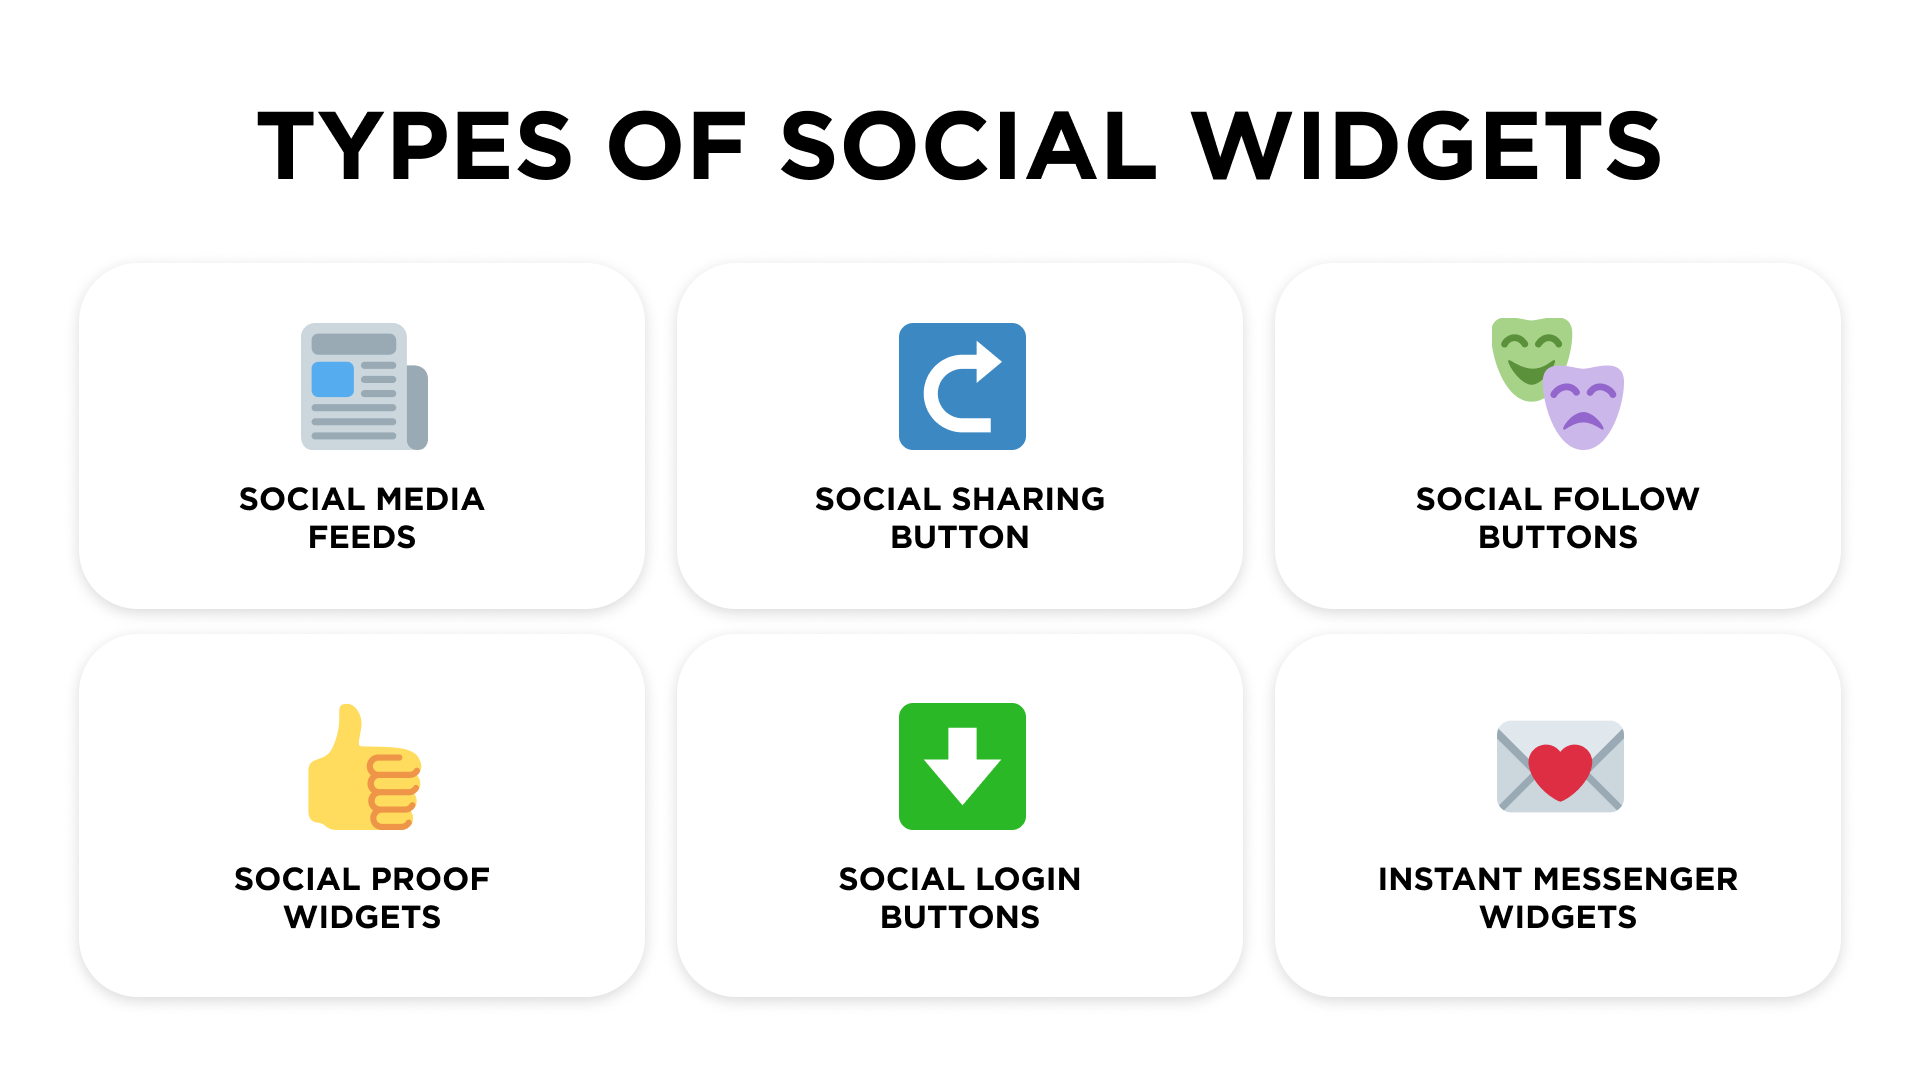 Types of social widgets